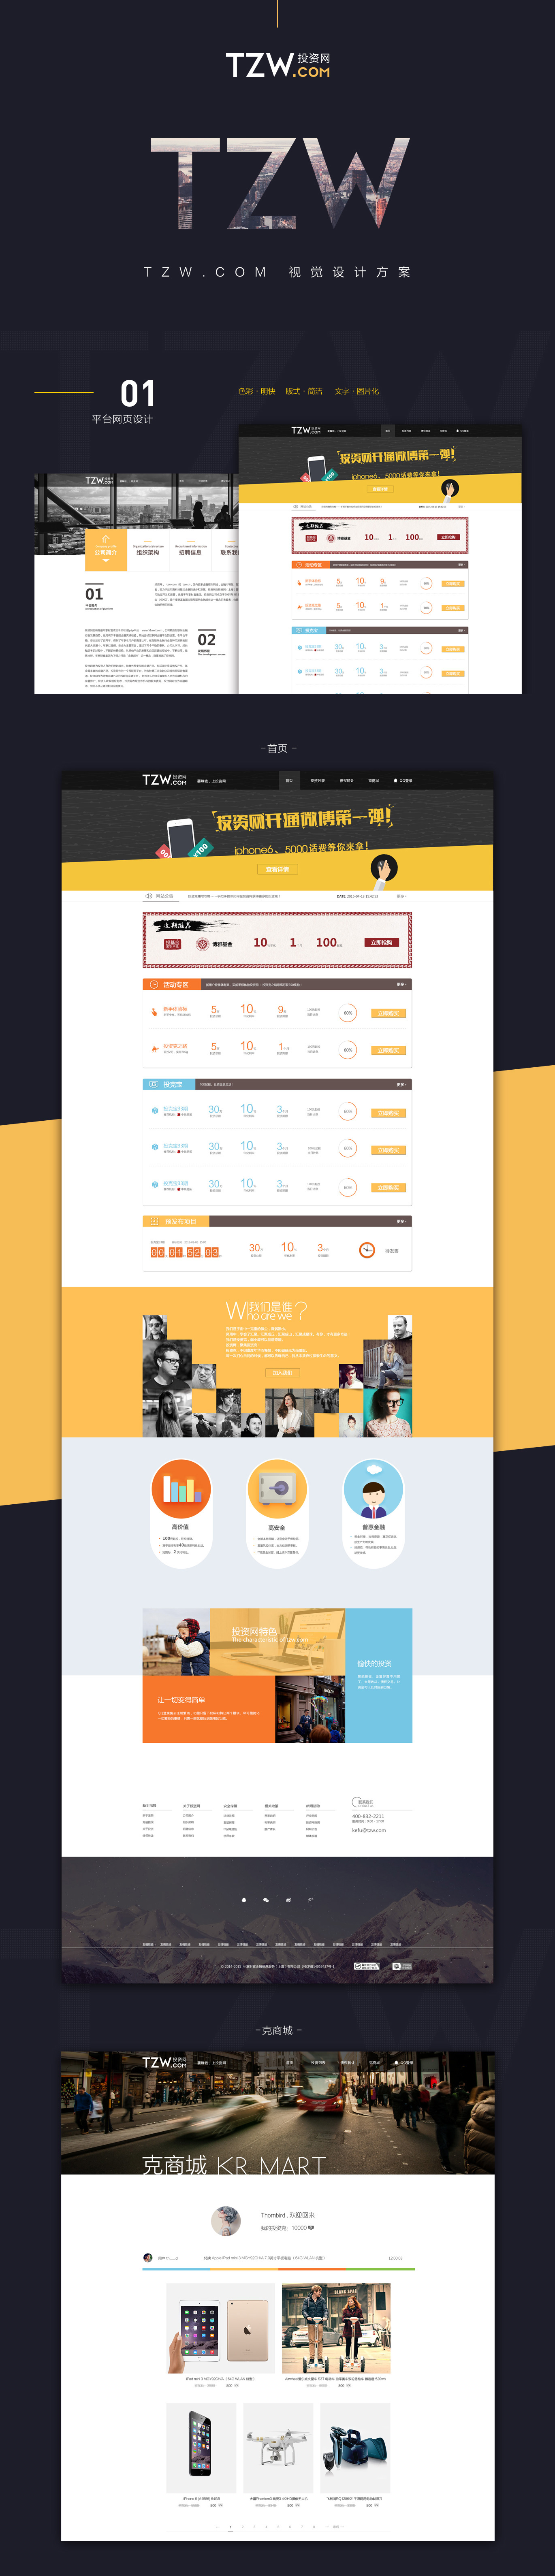 金融网站视觉设计方案网页设计uibanner